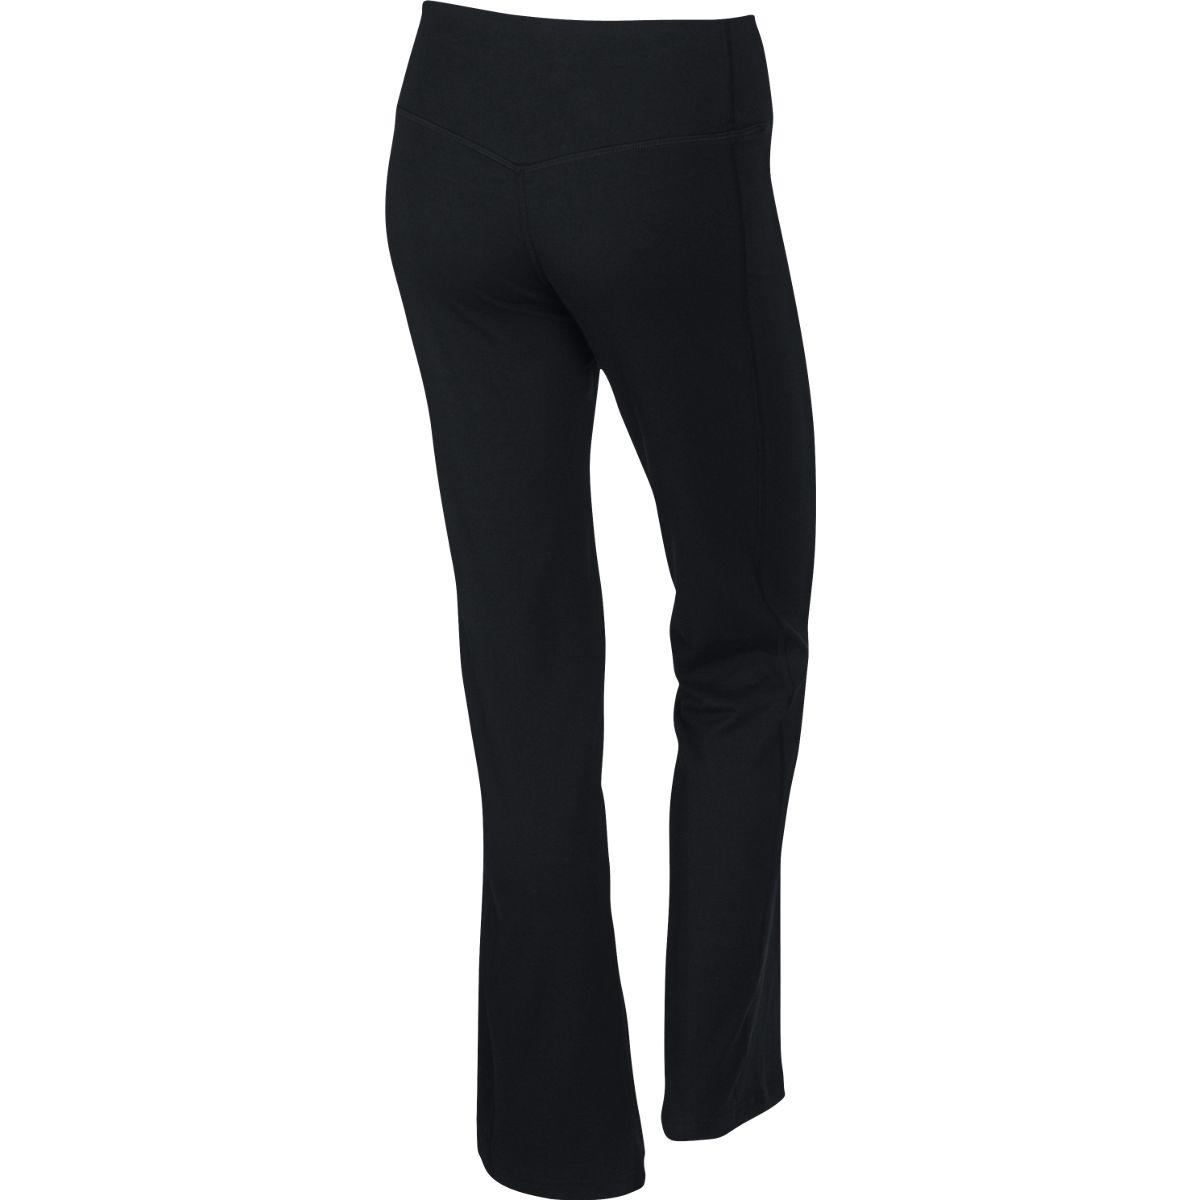 Nike Womens Dri-FIT Cotton Legend 2.0 Pants - Black - Tennisnuts.com